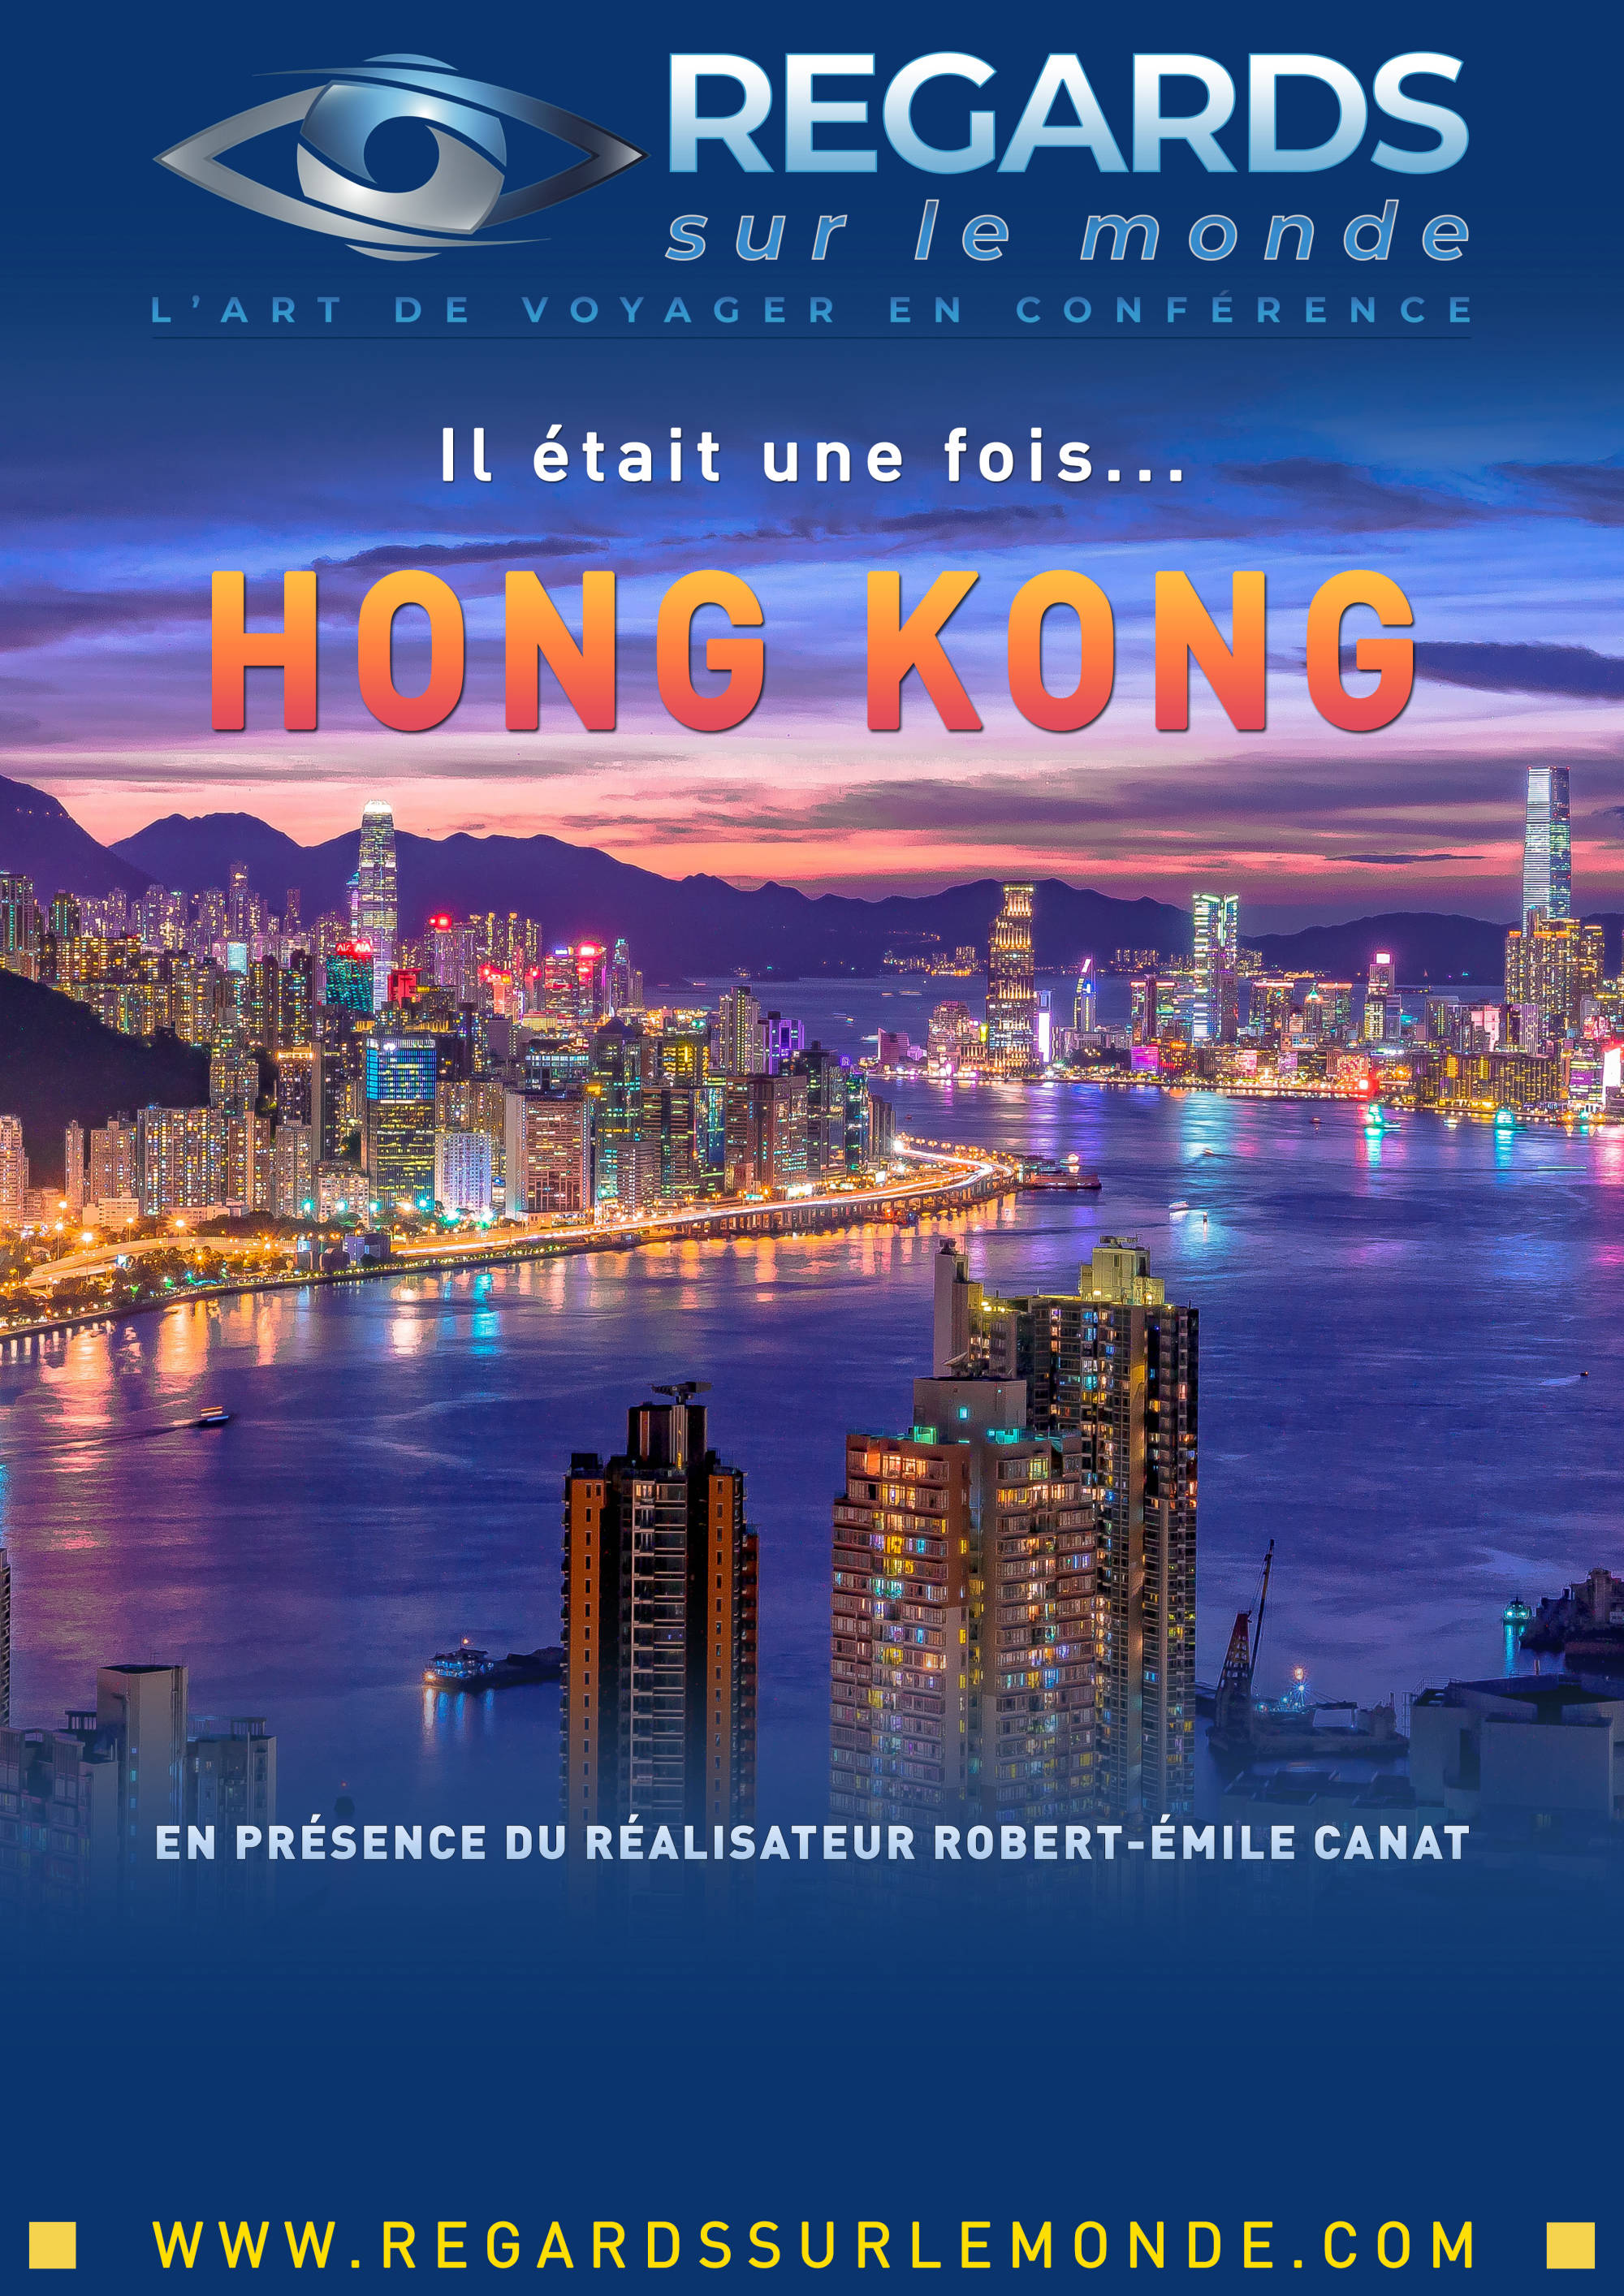 Il était une fois... HONG KONG - Film de Robert-Emile CanatAcker